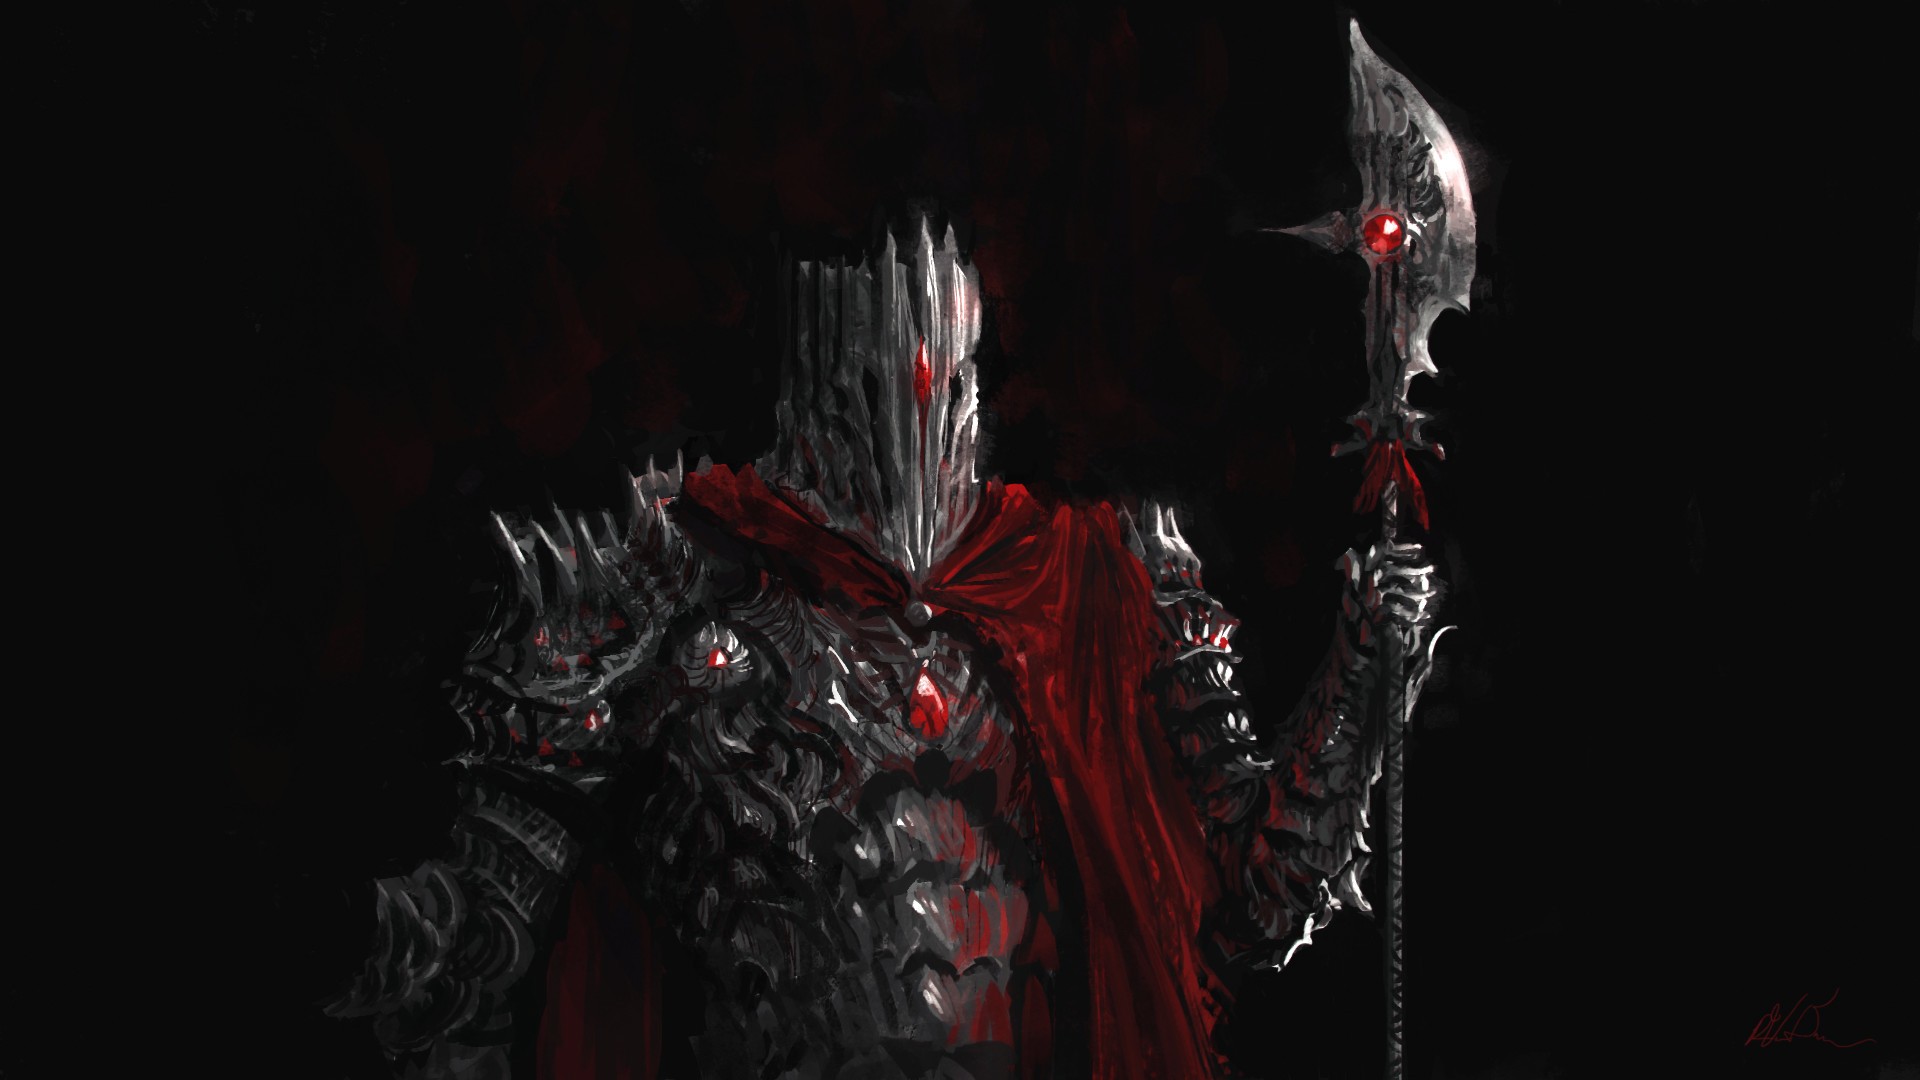 General 1920x1080 digital art axes knight armor fantasy art Ryan van Dongen dark fantasy demon